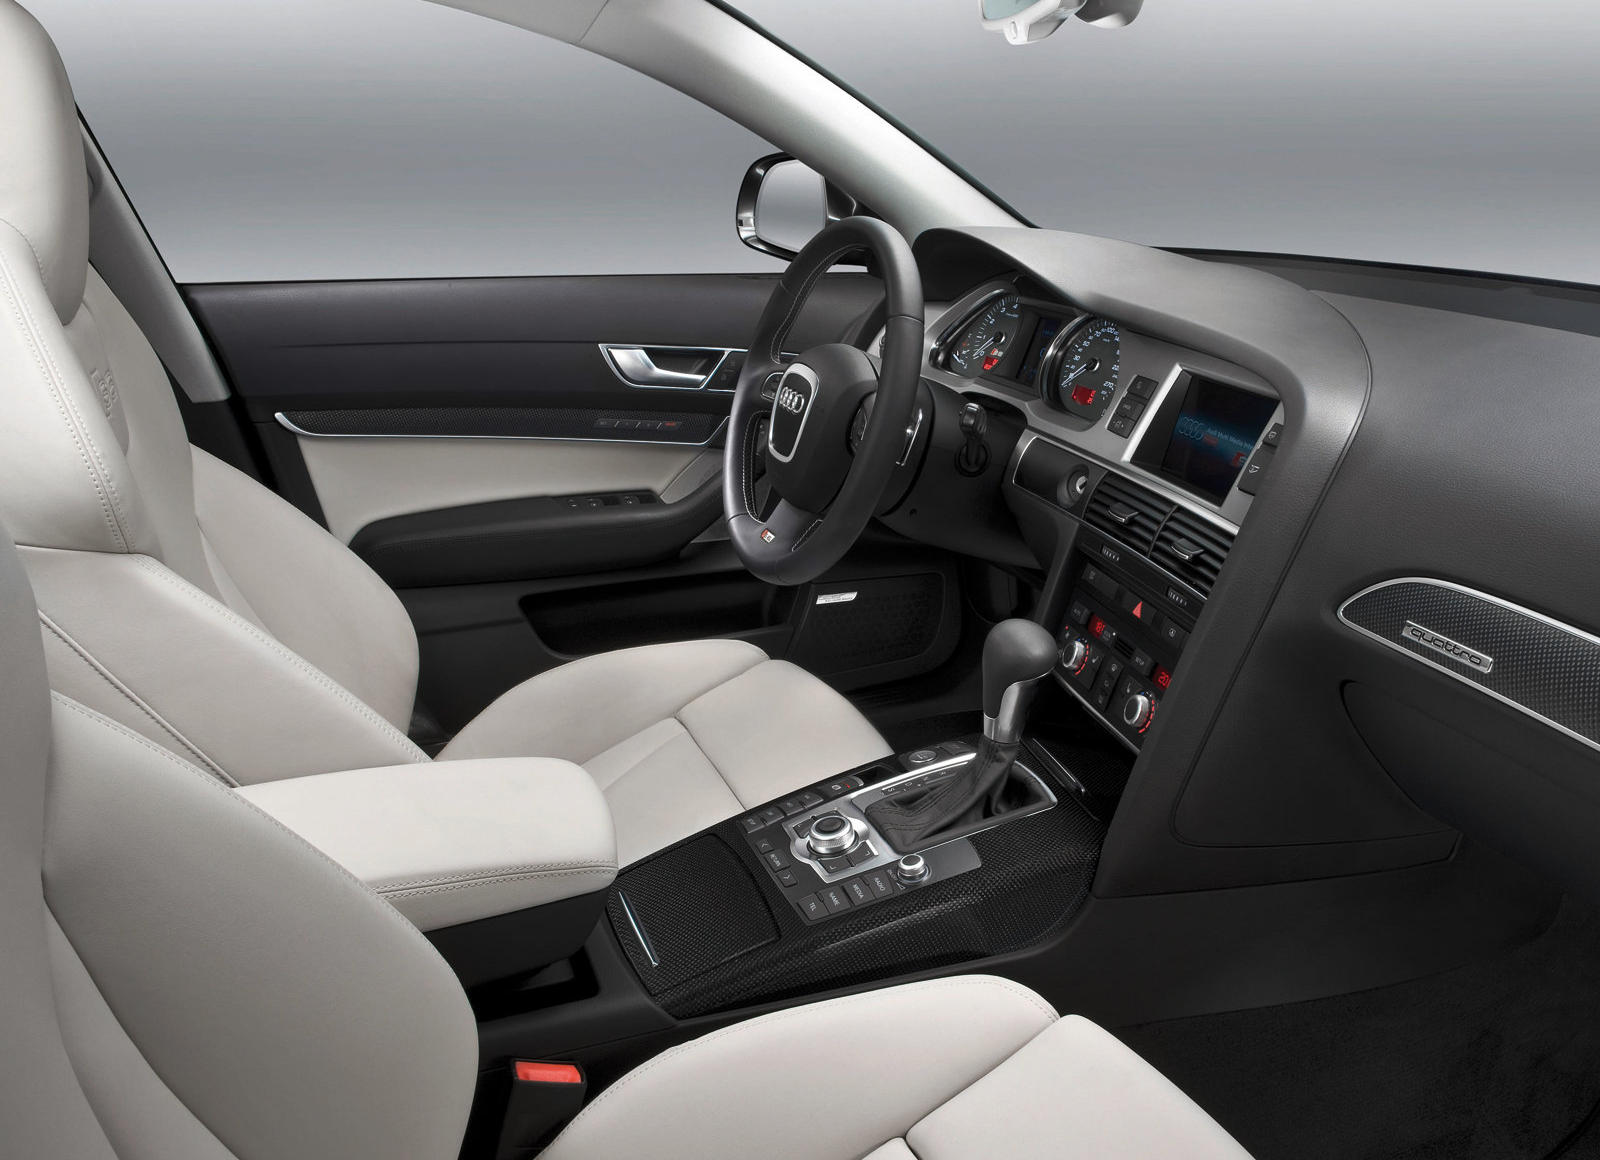 2009 Audi S6 Interior Photos | CarBuzz